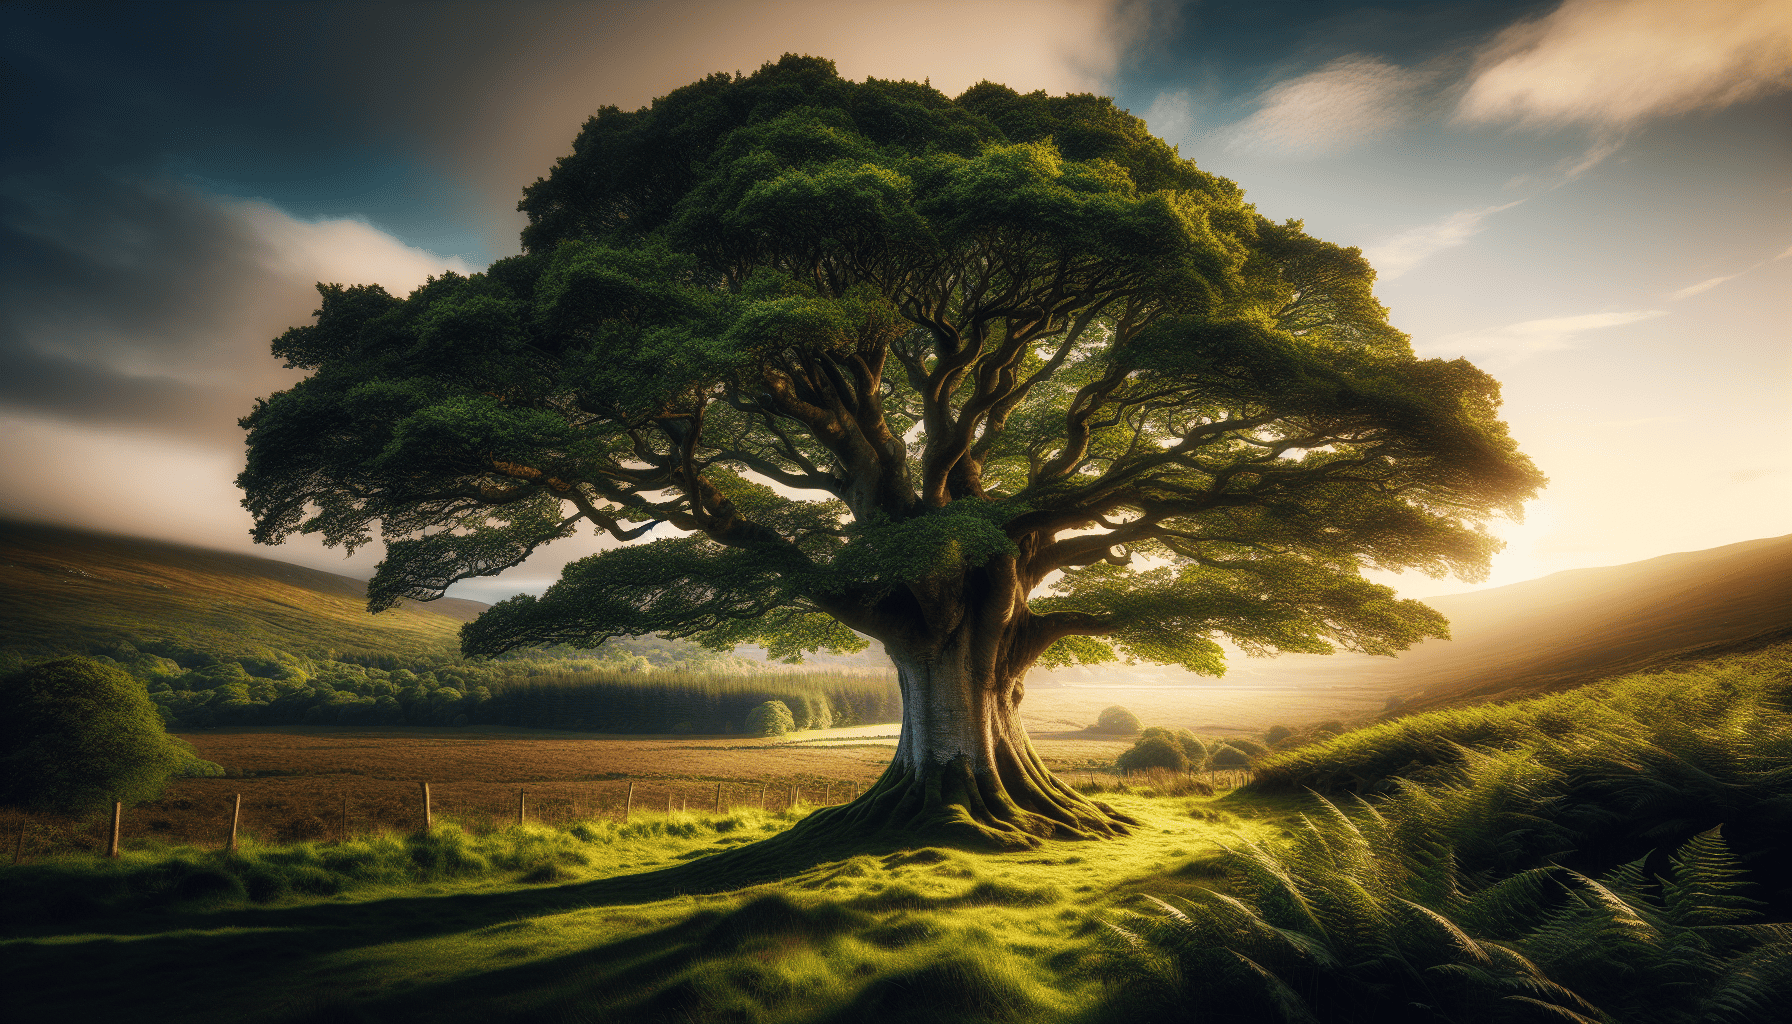 Sessile Oak, Ireland's national tree